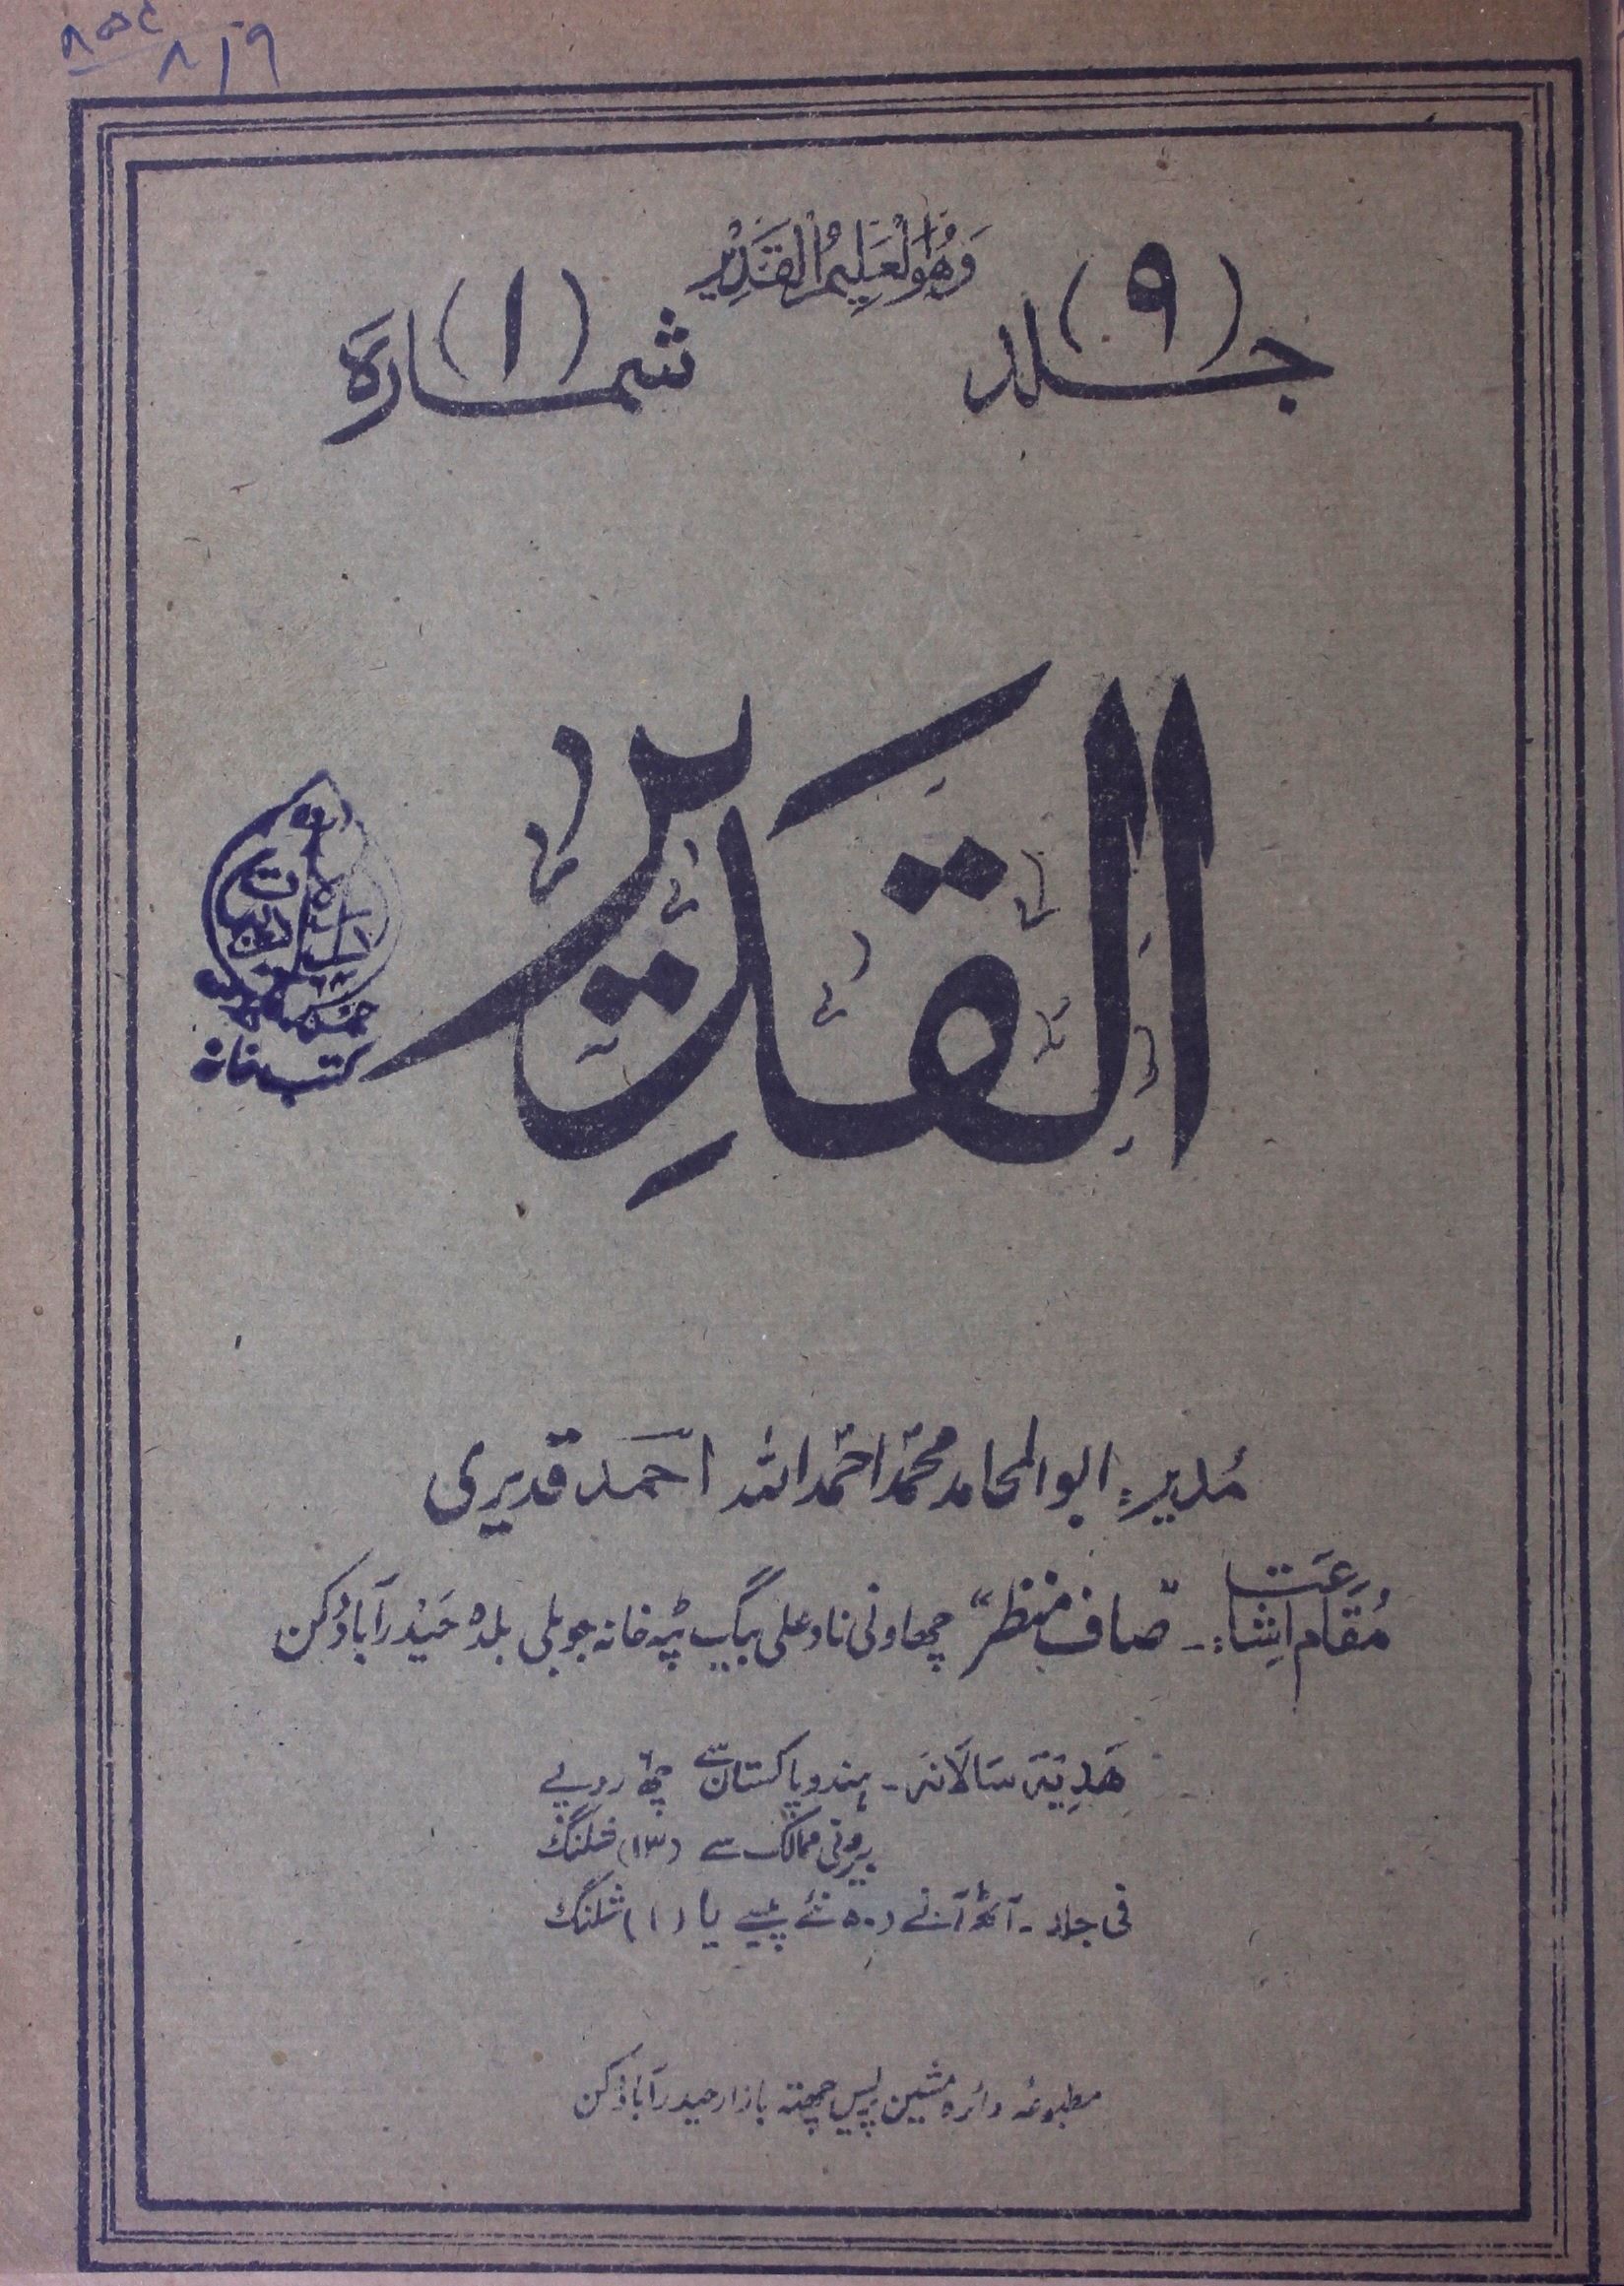 Al Qadeer Jild 9 Sh. 1 July 1959-Shumara Number-001